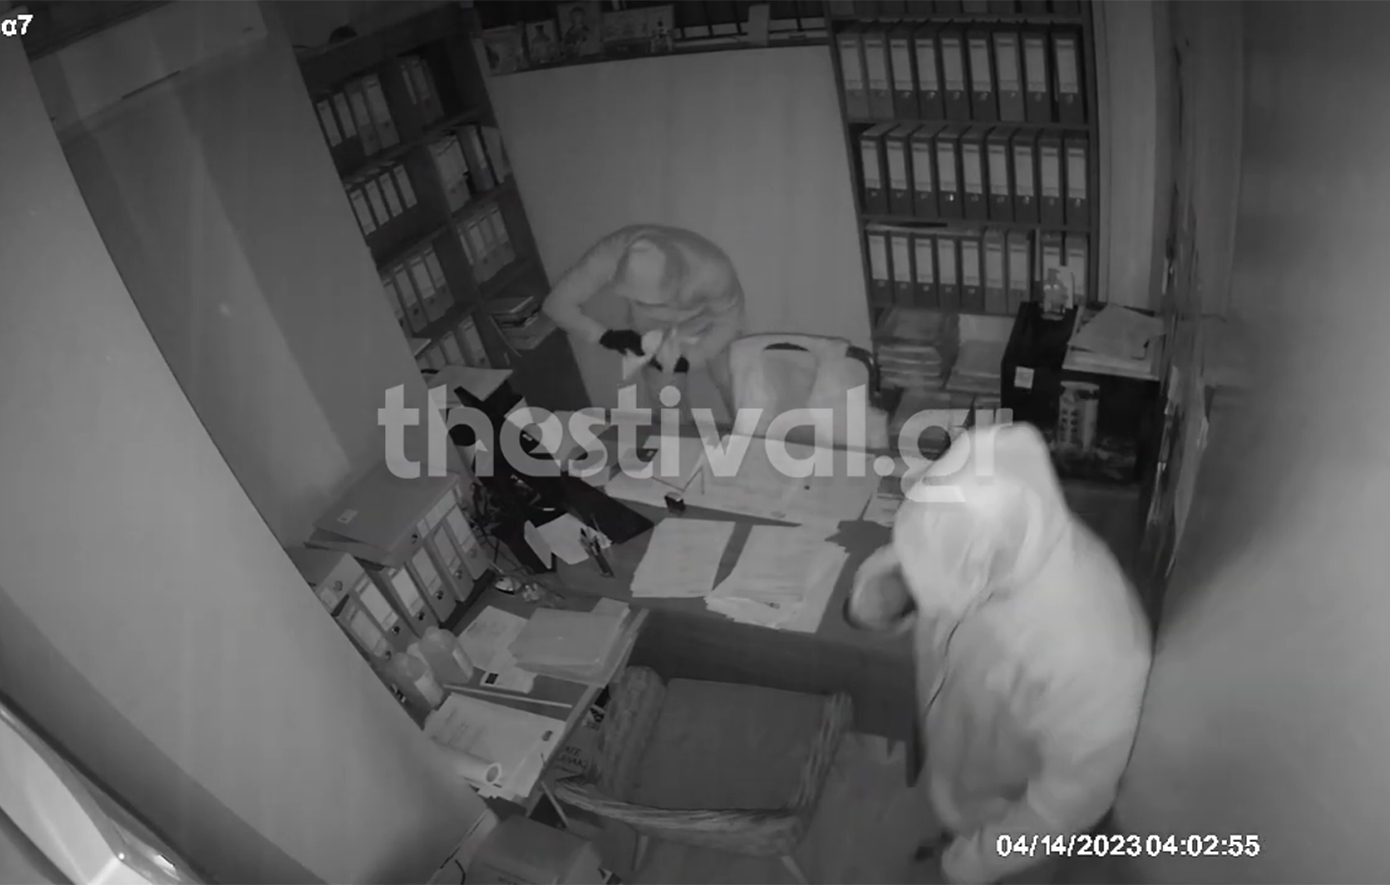 Βίντεο ντοκουμέντο από διάρρηξη σε γνωστό εστιατόριο της Θεσσαλονίκης